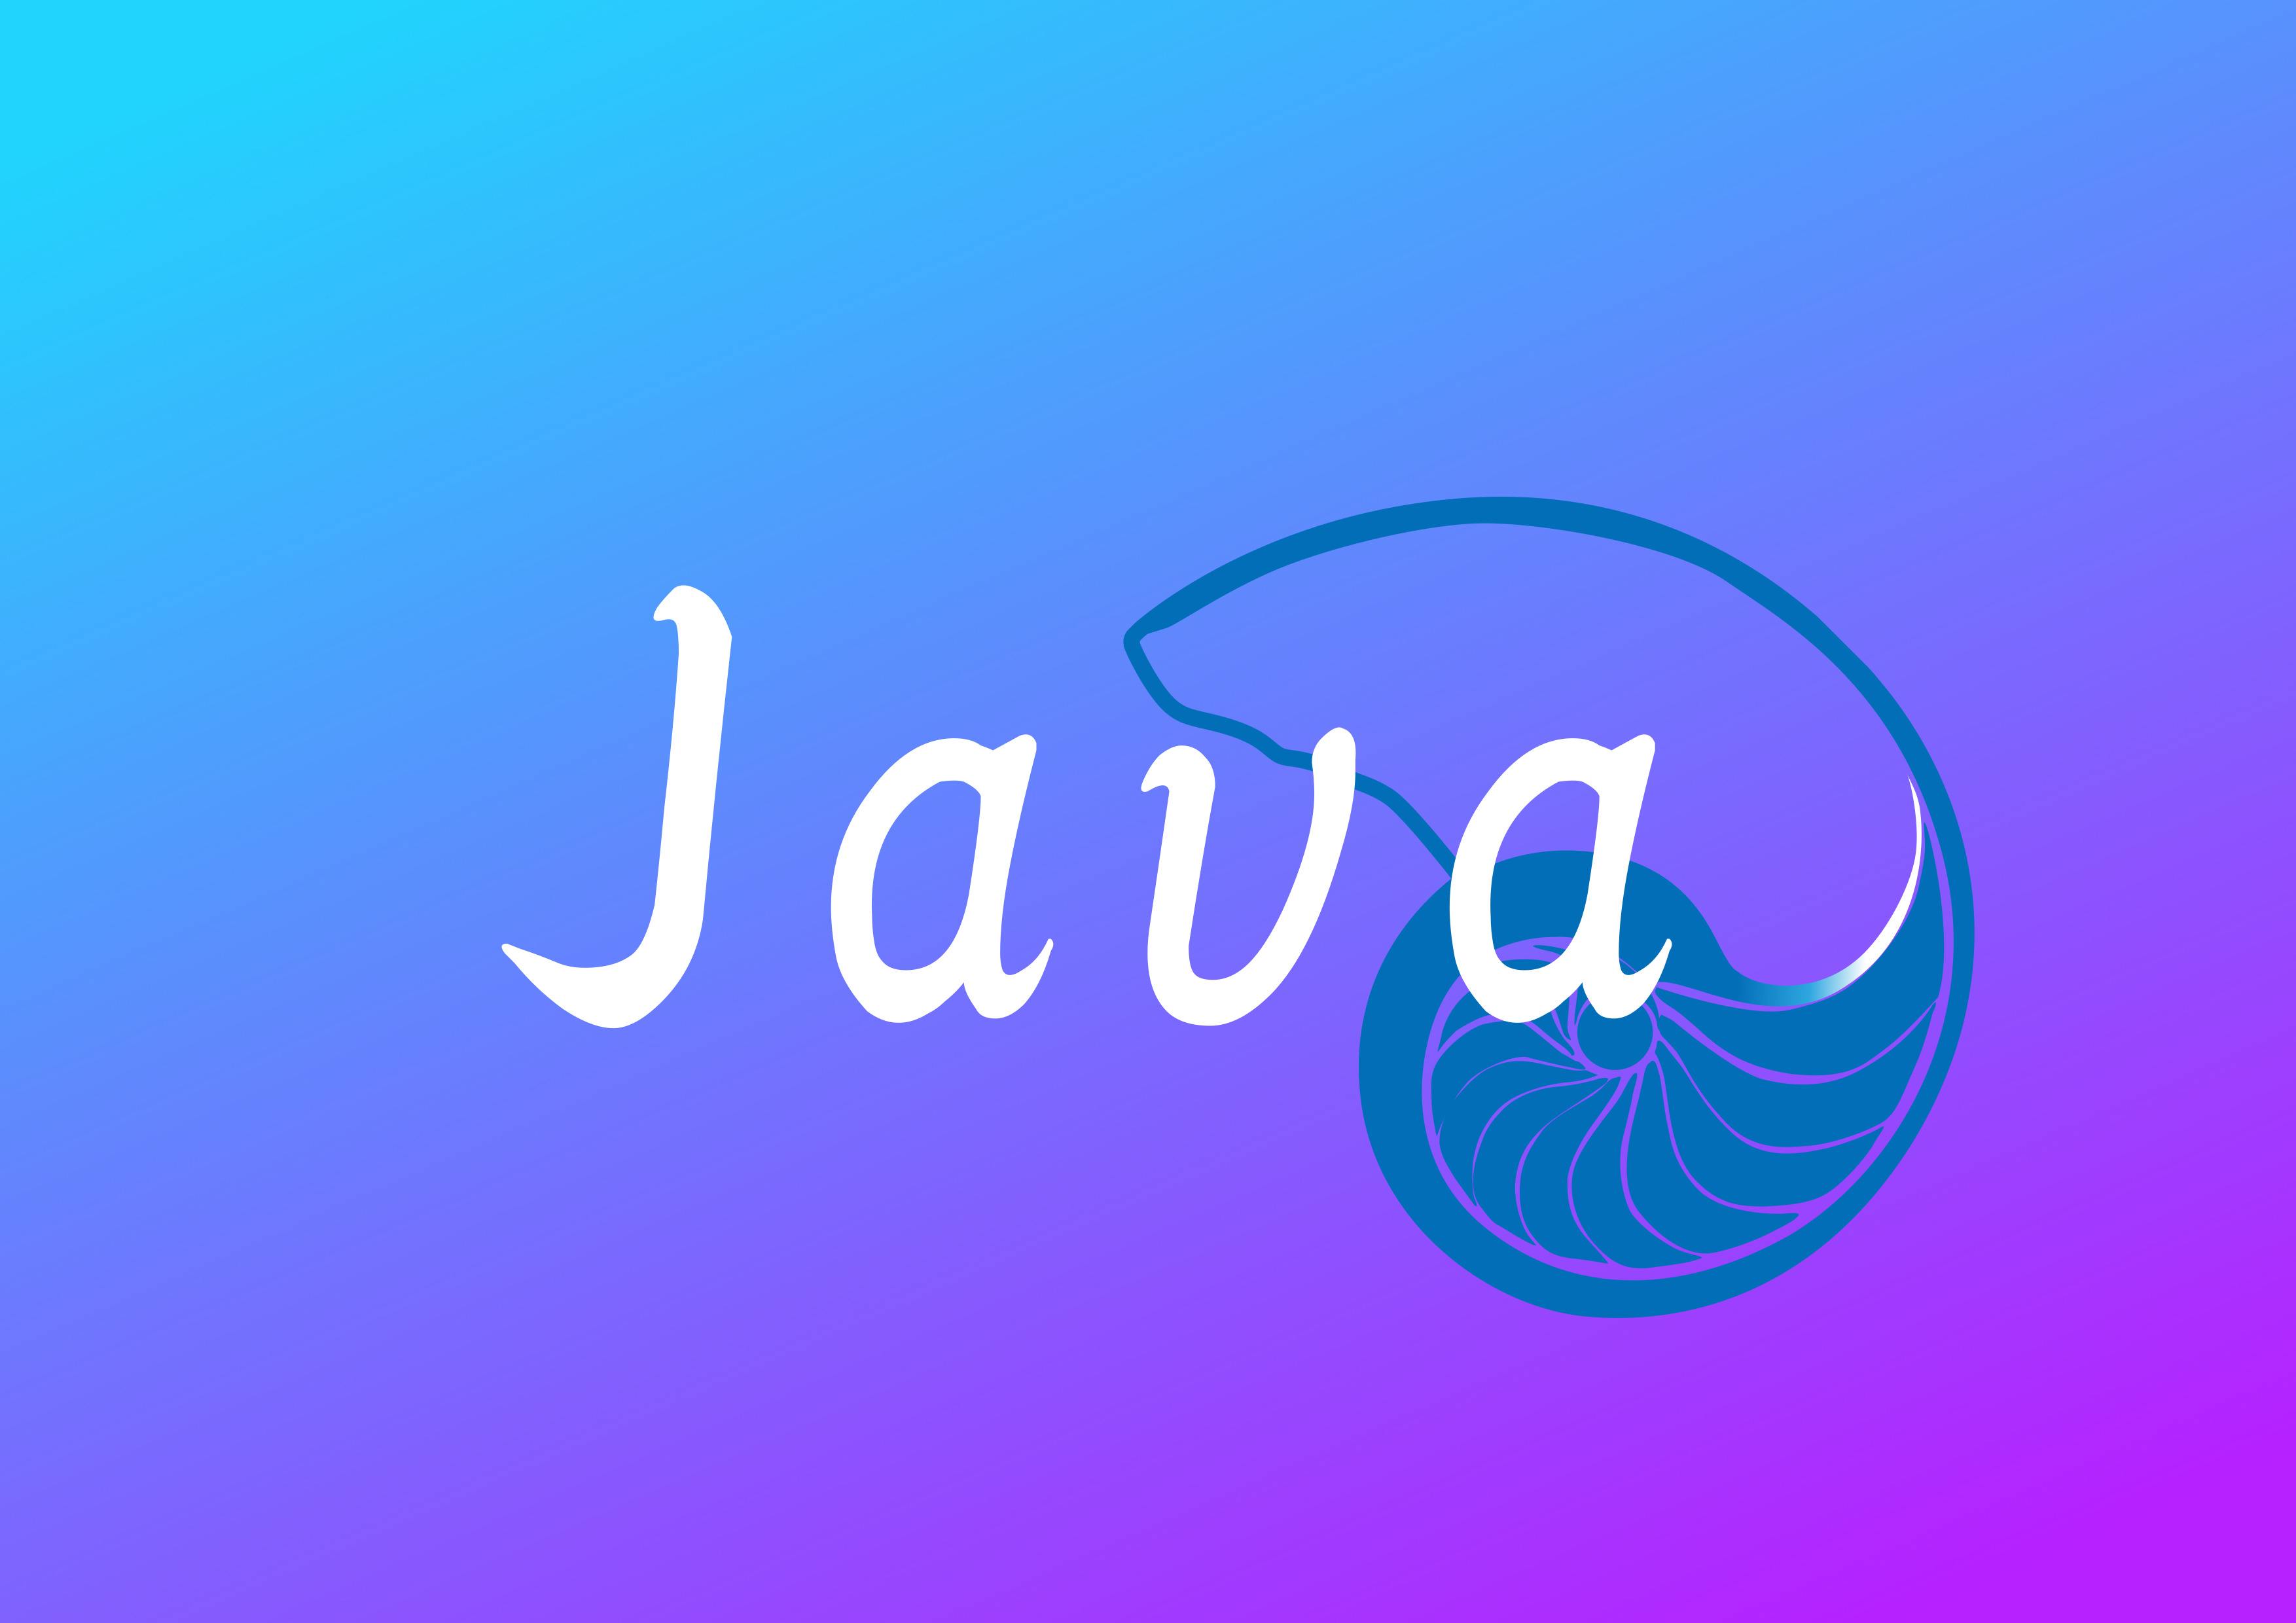 大部分人都认可java比c的编写代码速度快，先审视两种语言的区别！